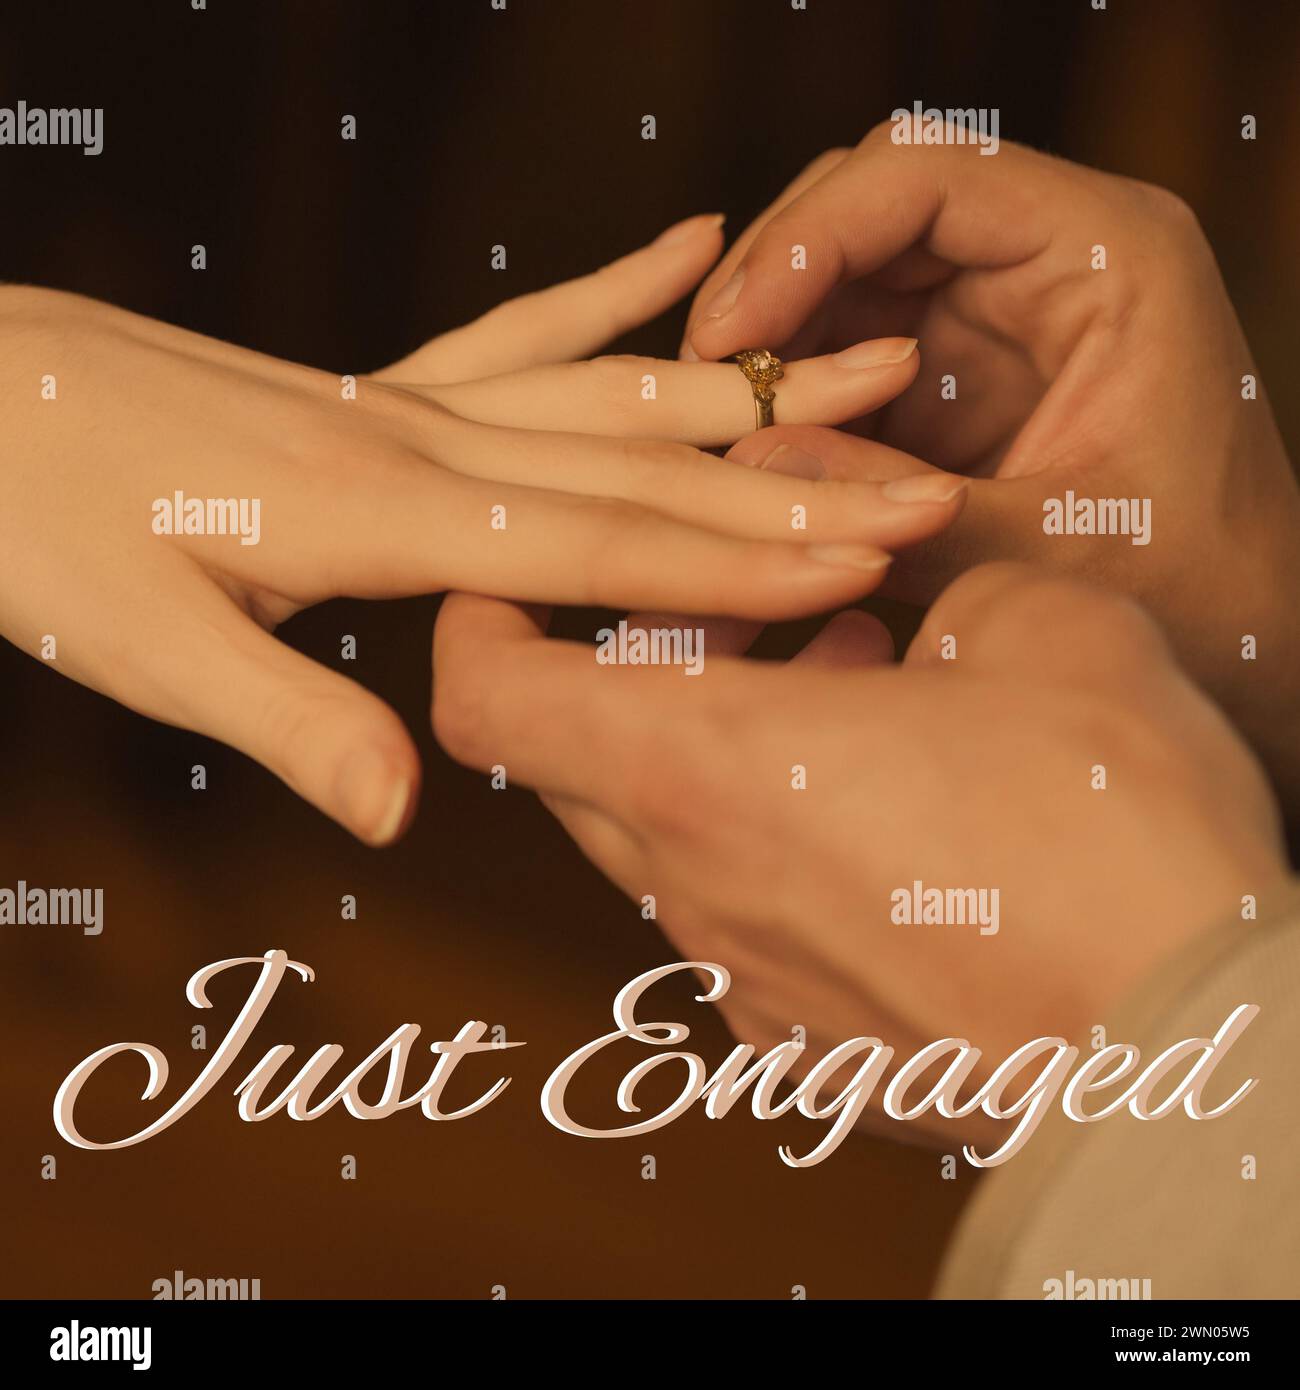 Célébrant un moment spécial, deux mains s’engagent avec une bague symbolisant l’engagement et l’amour Banque D'Images